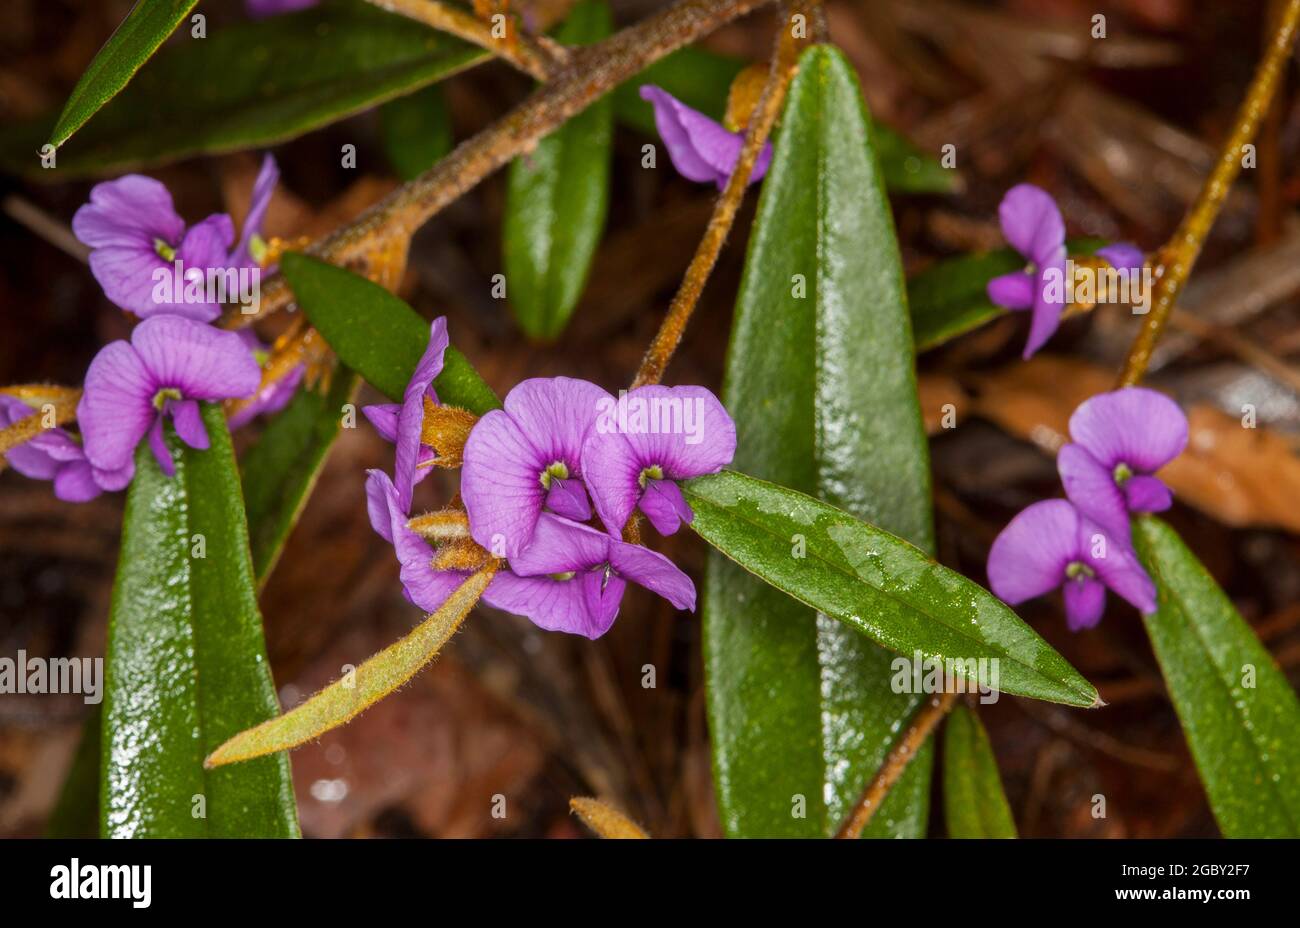 Fleurs sauvages colorées, fleurs violets vives et feuilles vert foncé de Hovea acutifolia, Violet Pea Bush, un arbuste australien Banque D'Images